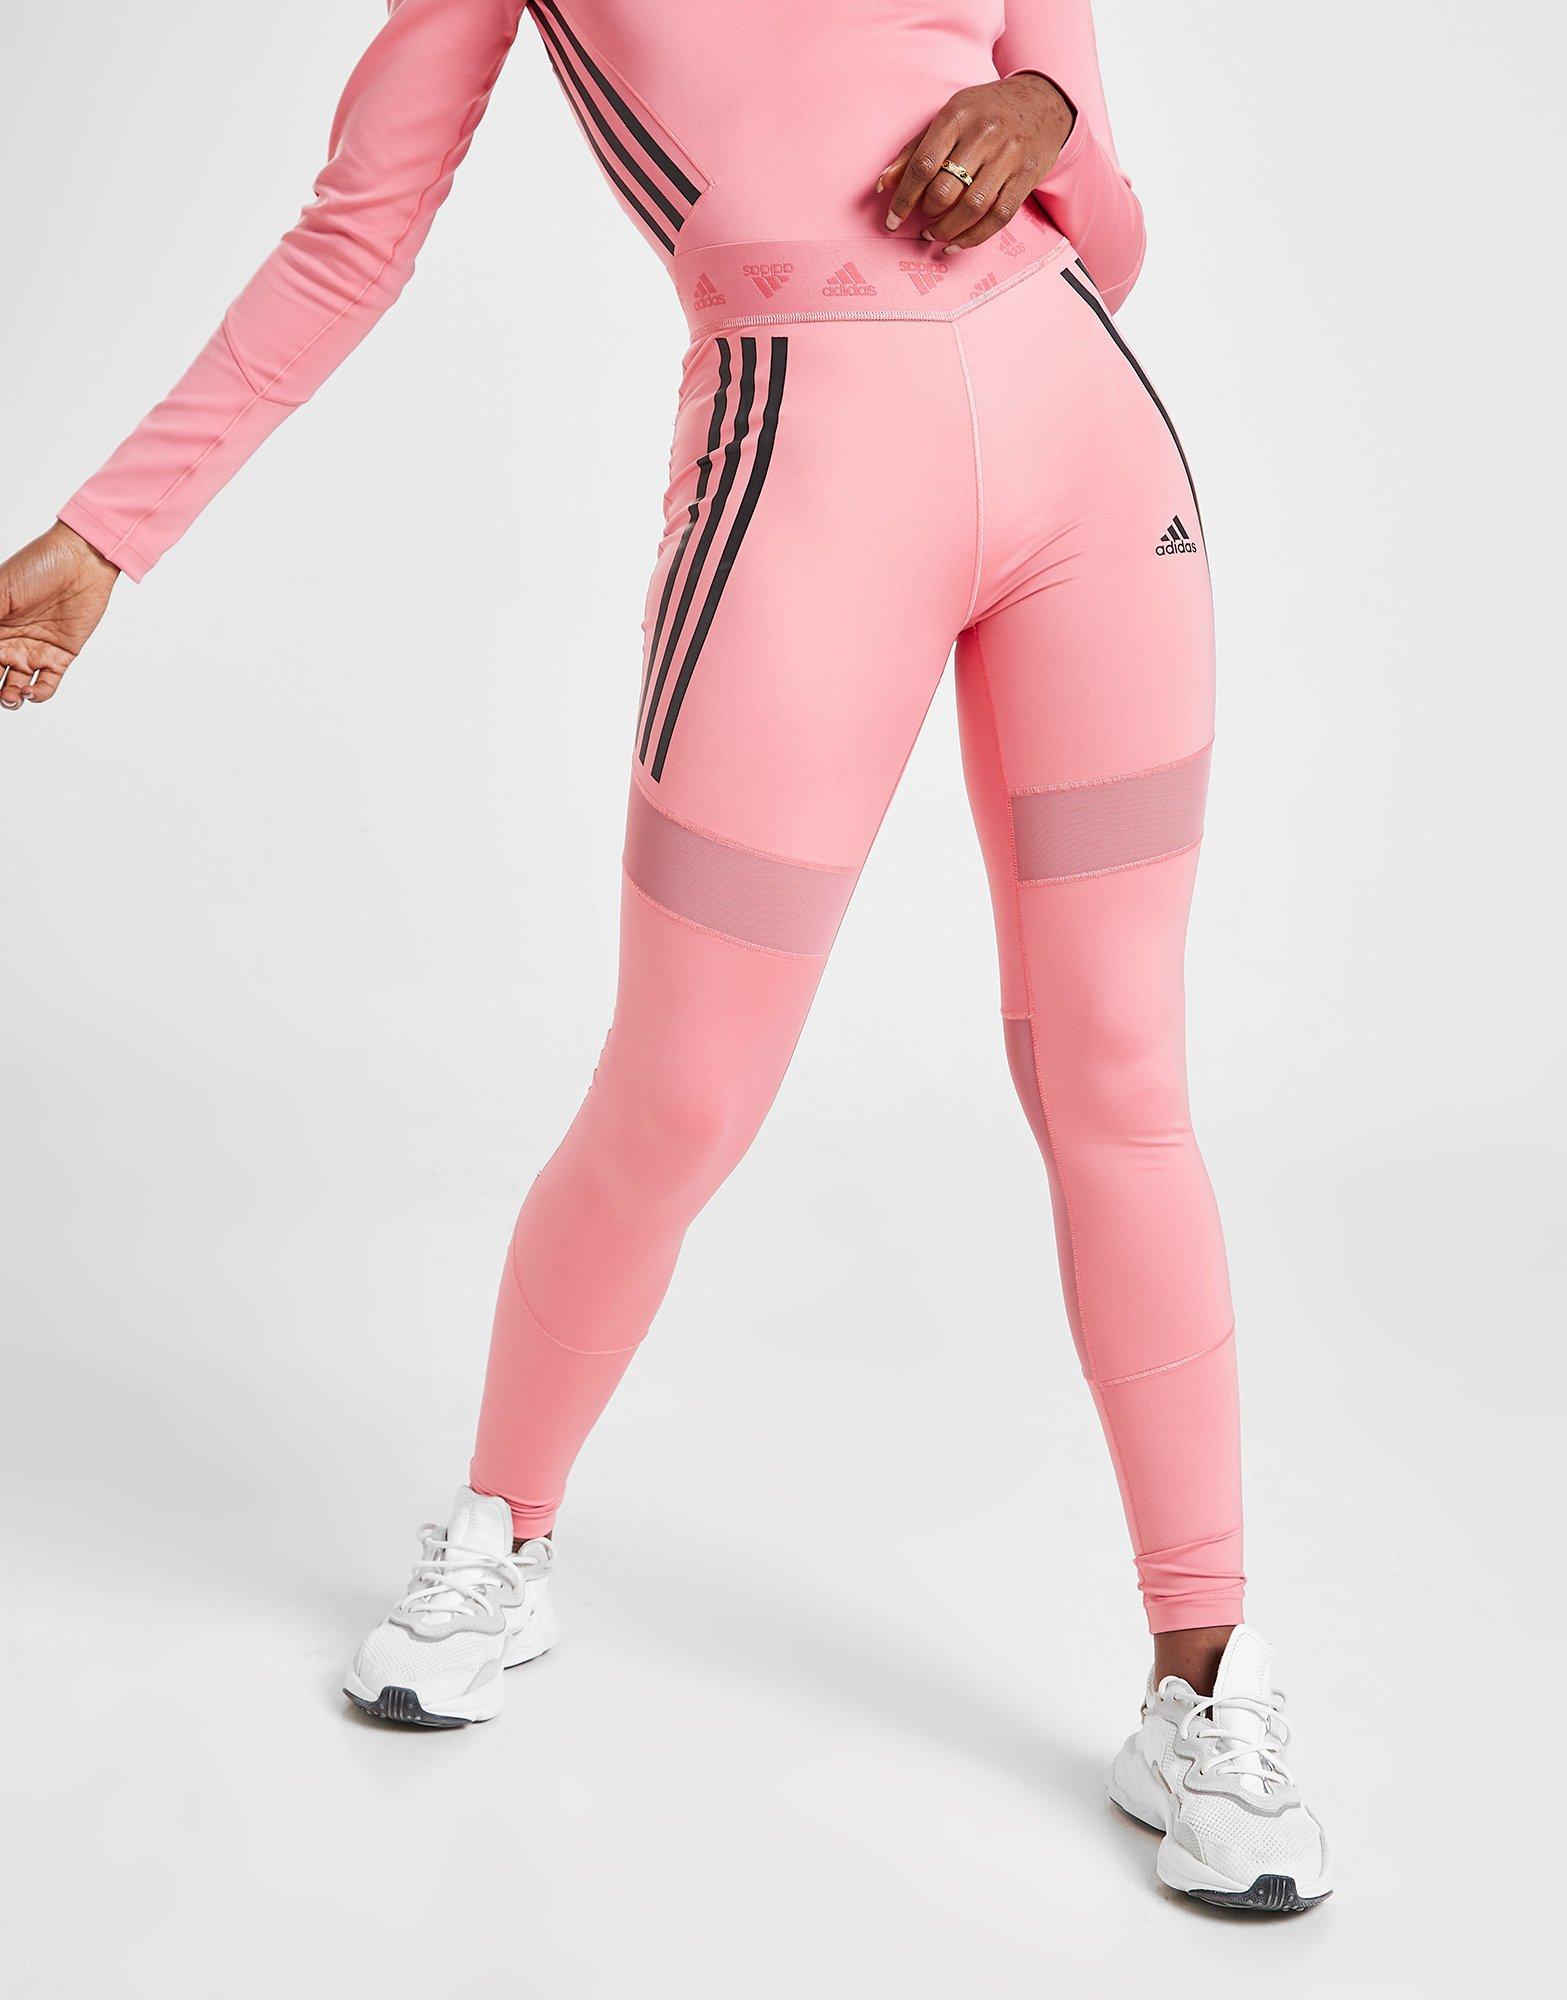 adidas tights pink